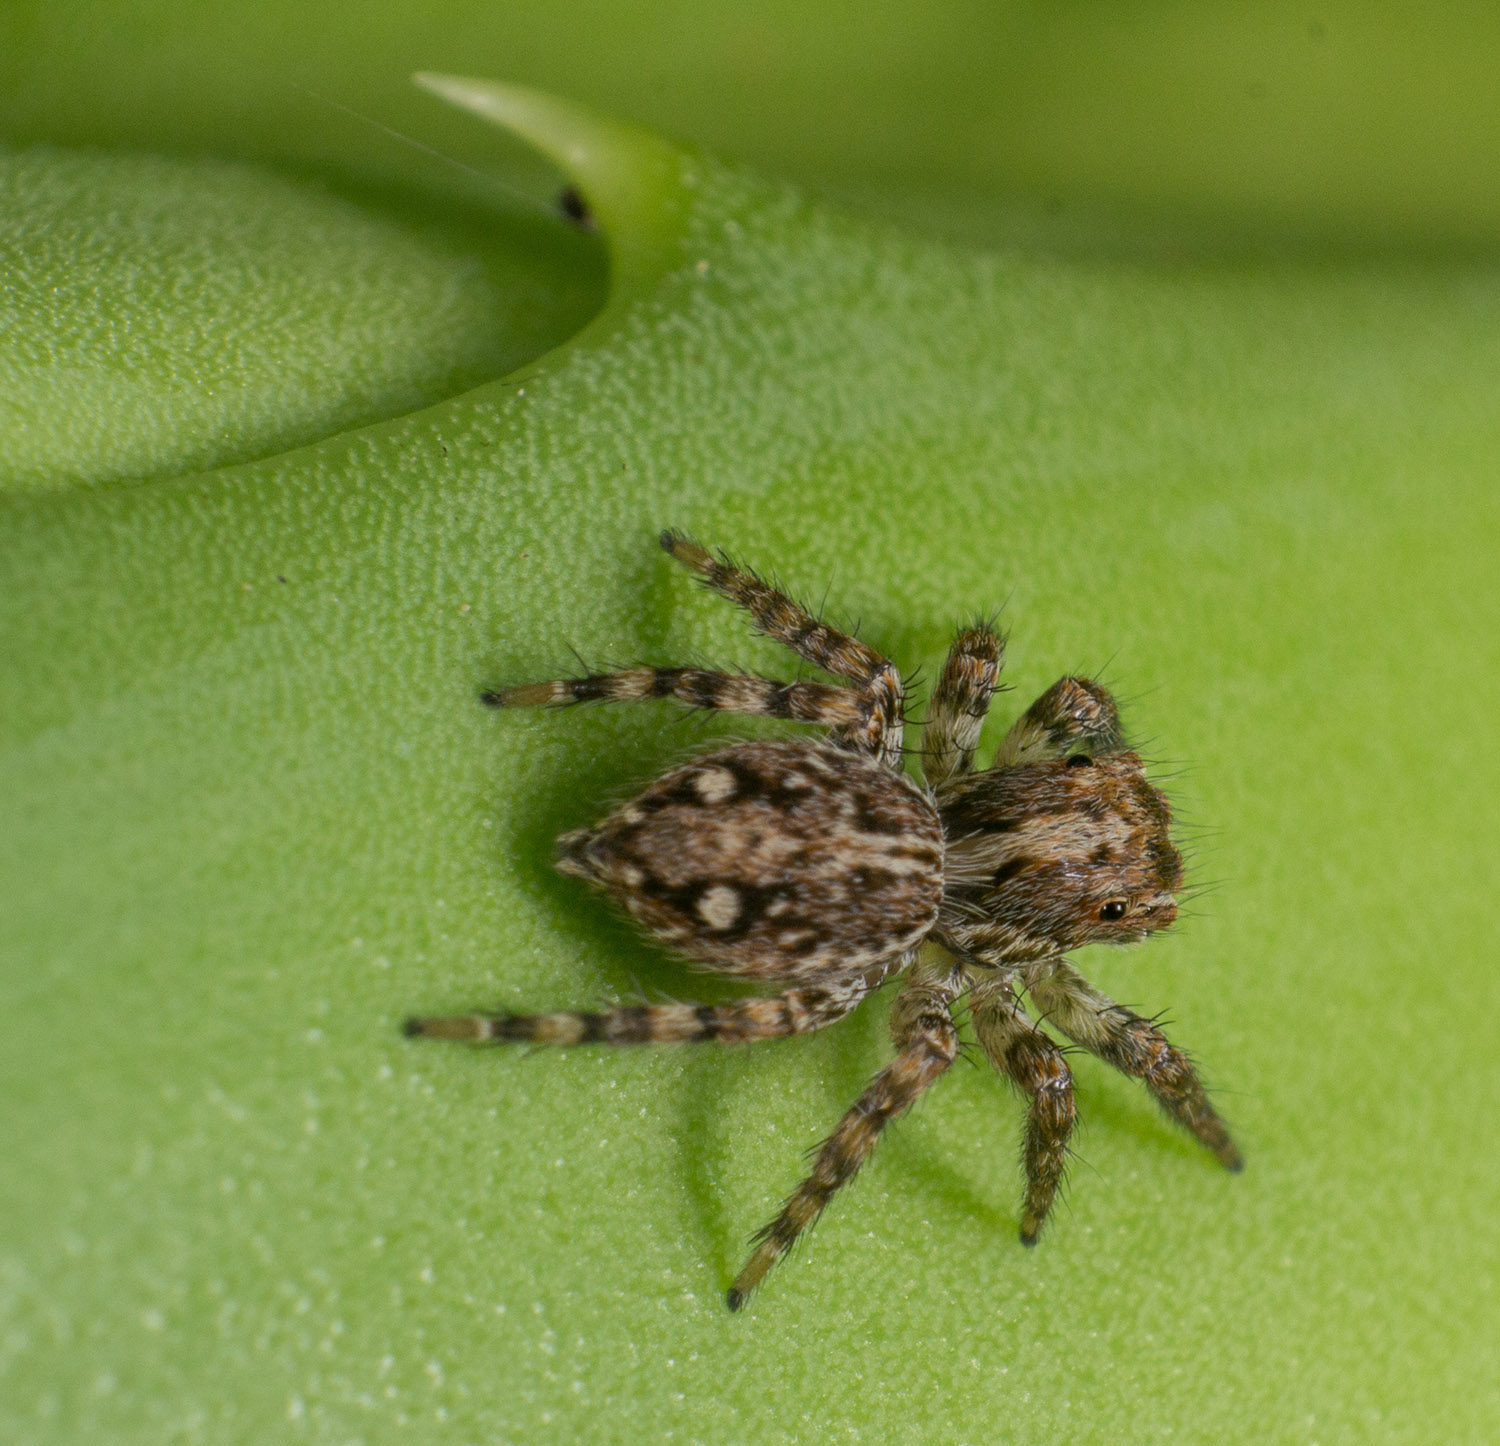 Résultat de recherche d'images pour "araignée sauteuse plexipus"